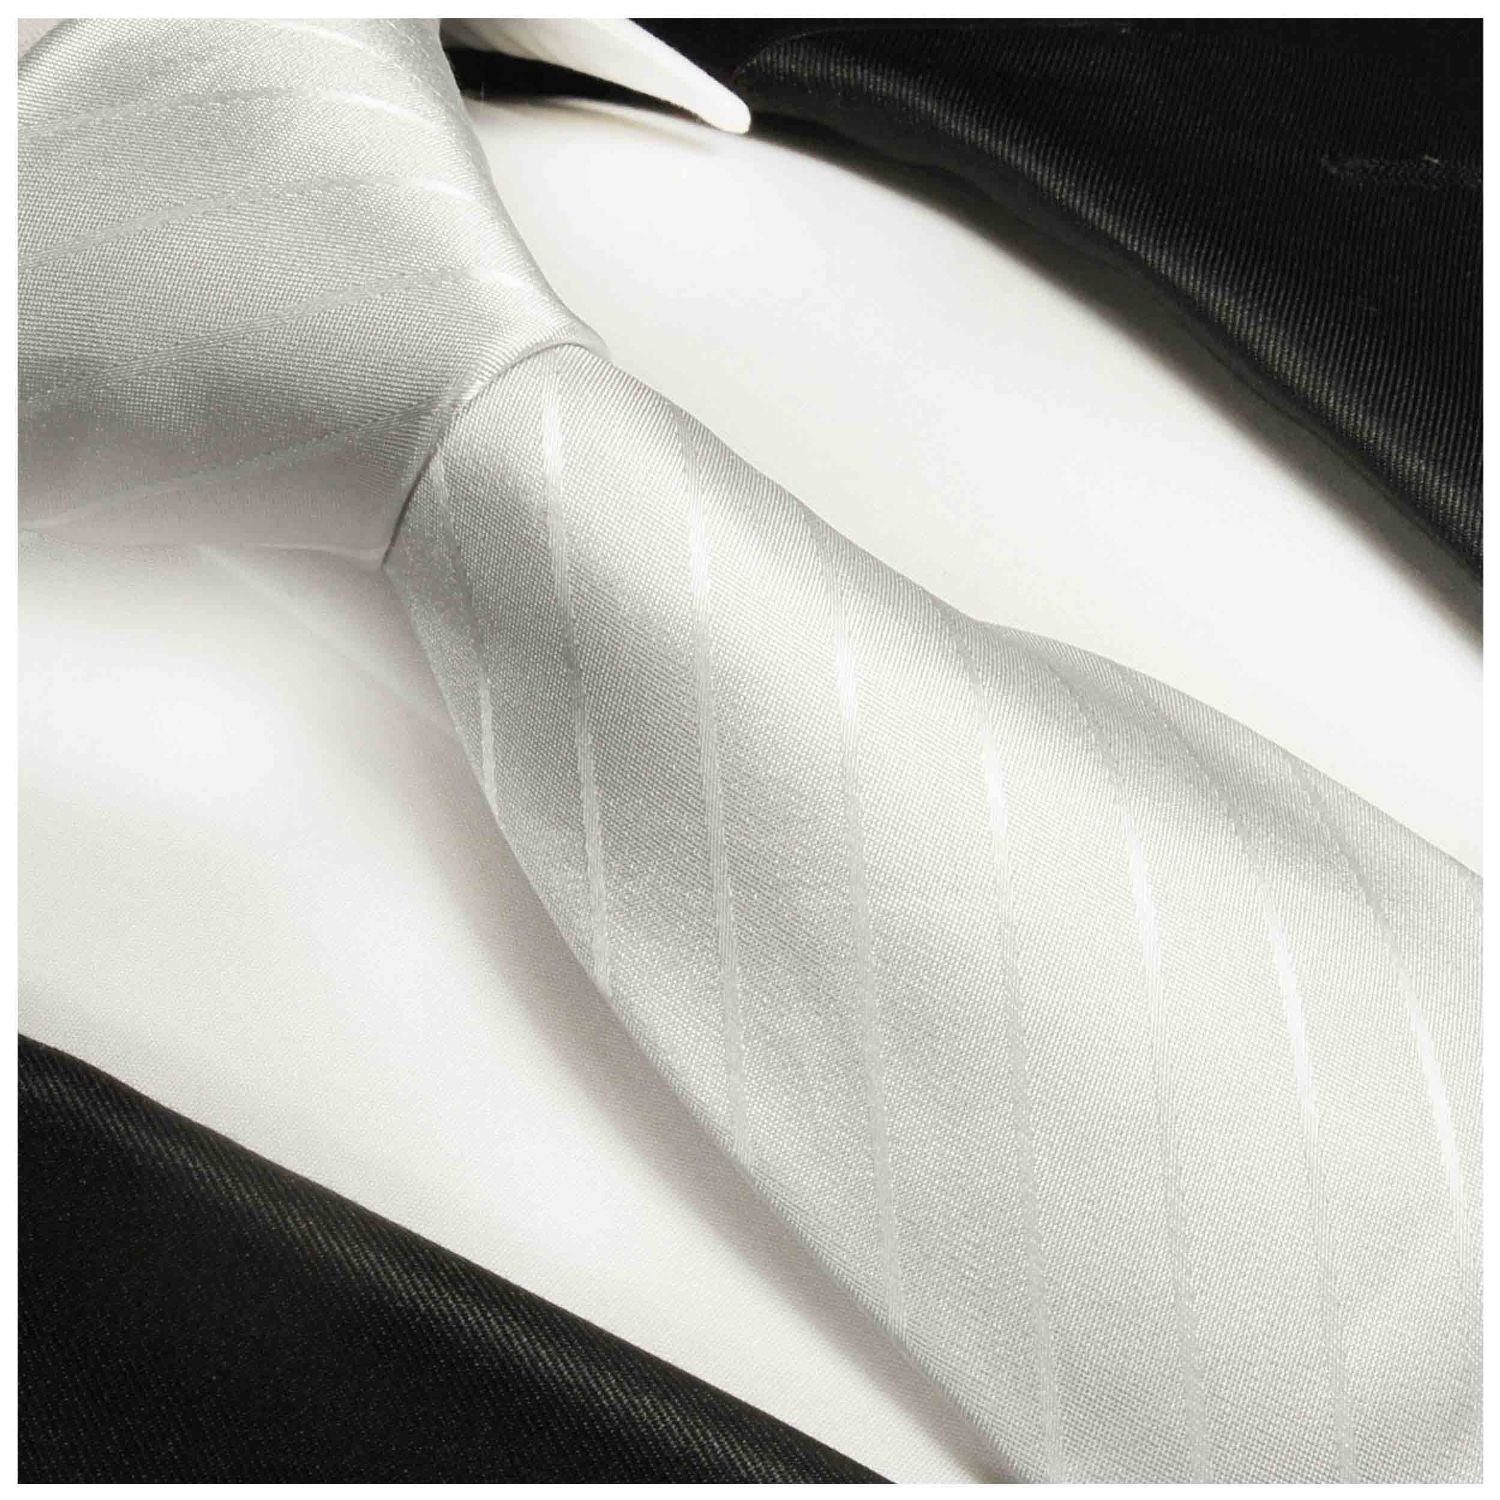 Paul Malone Krawatte Herren Seidenkrawatte Schmal Einstecktuch) gestreift Krawatte ivory 992 2-St., Tuch weiß (Set, Seide (6cm), mit 100% und